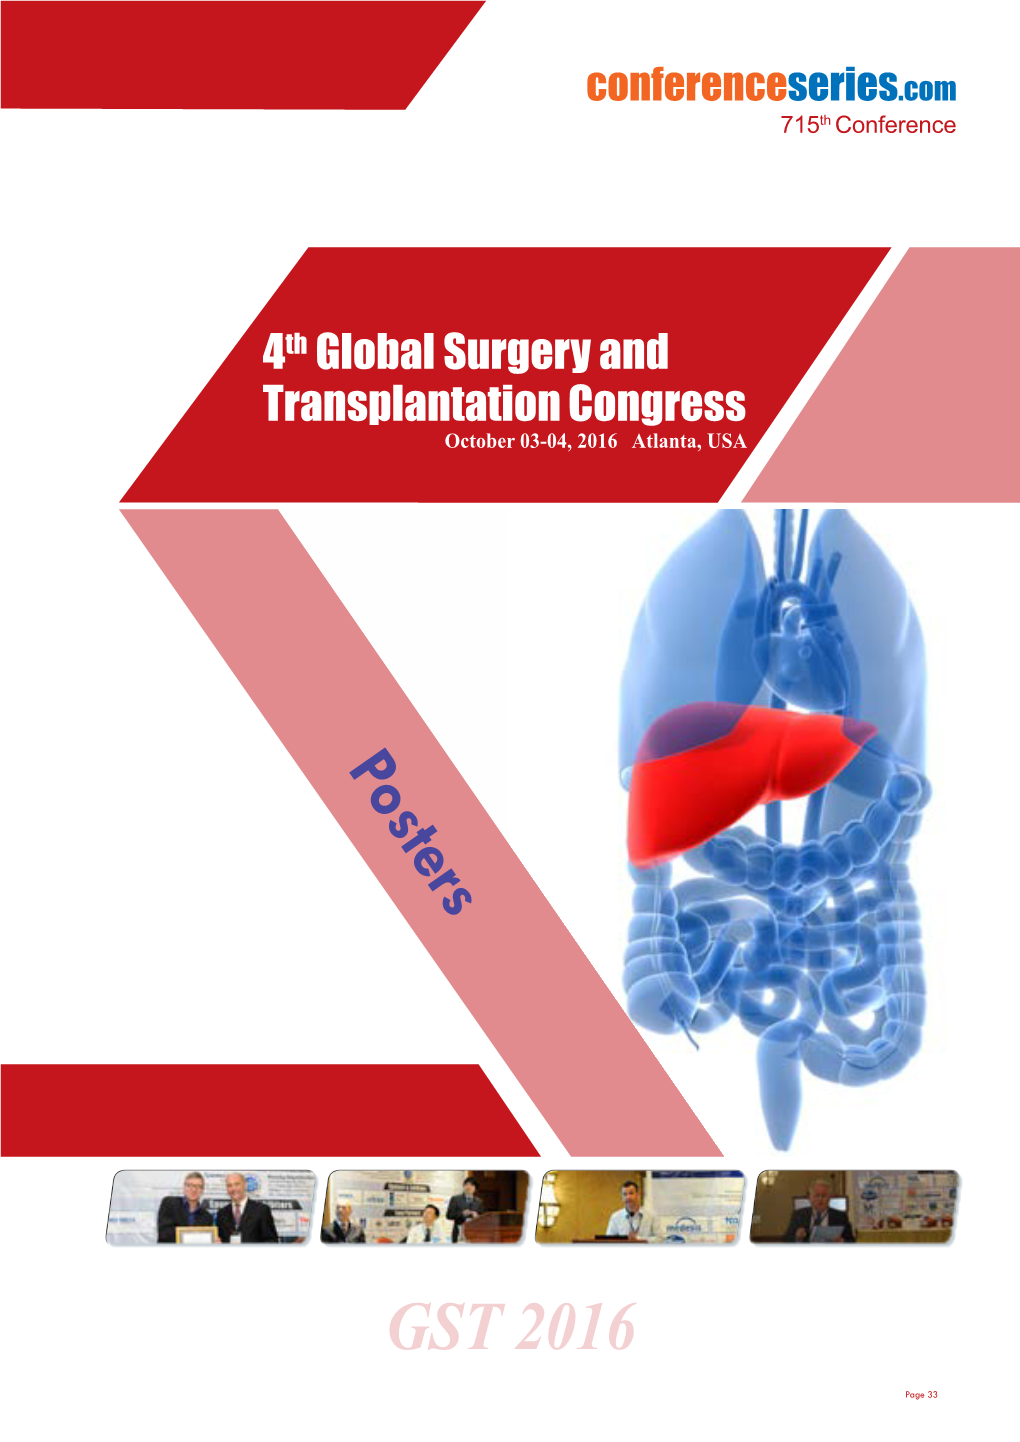 4Th Global Surgery and Transplantation Congress October 03-04, 2016 Atlanta, USA